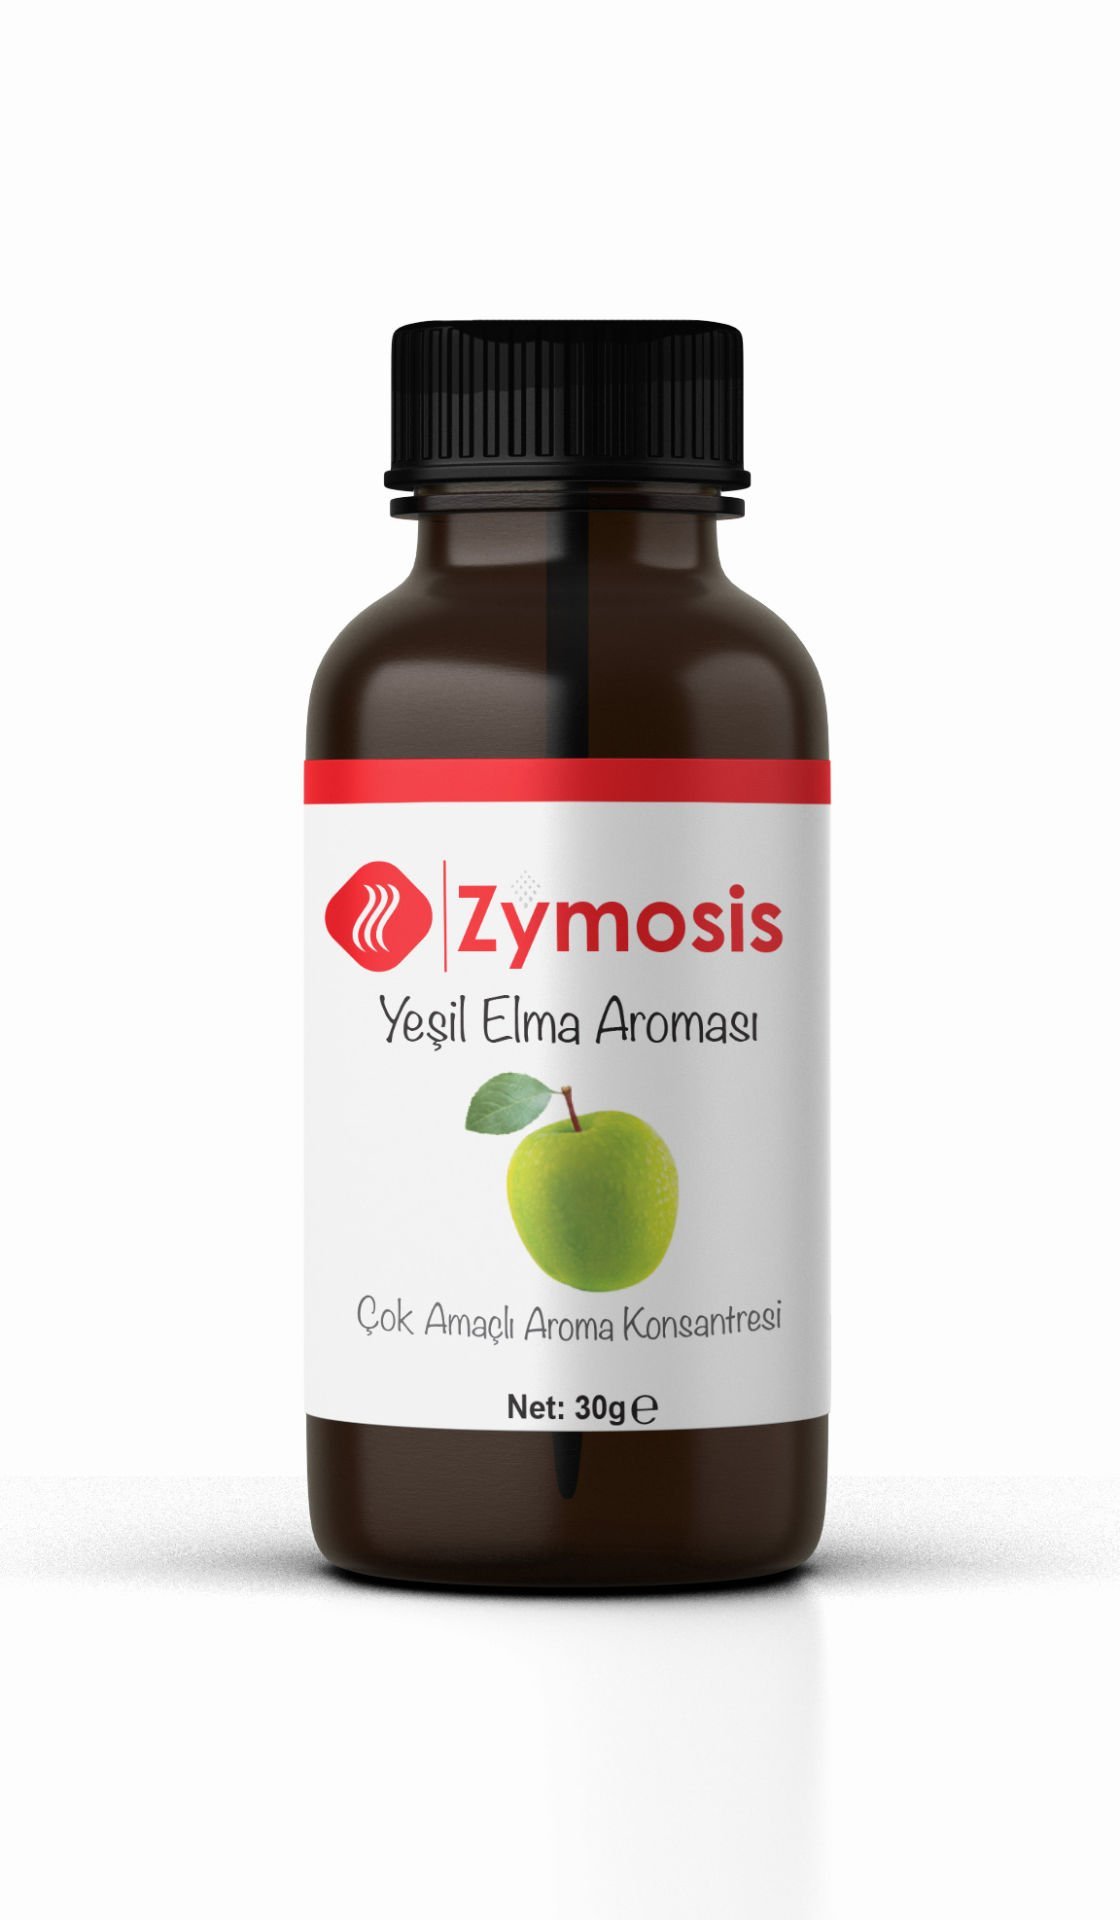 Zymosis Yeşil Elma Aroması